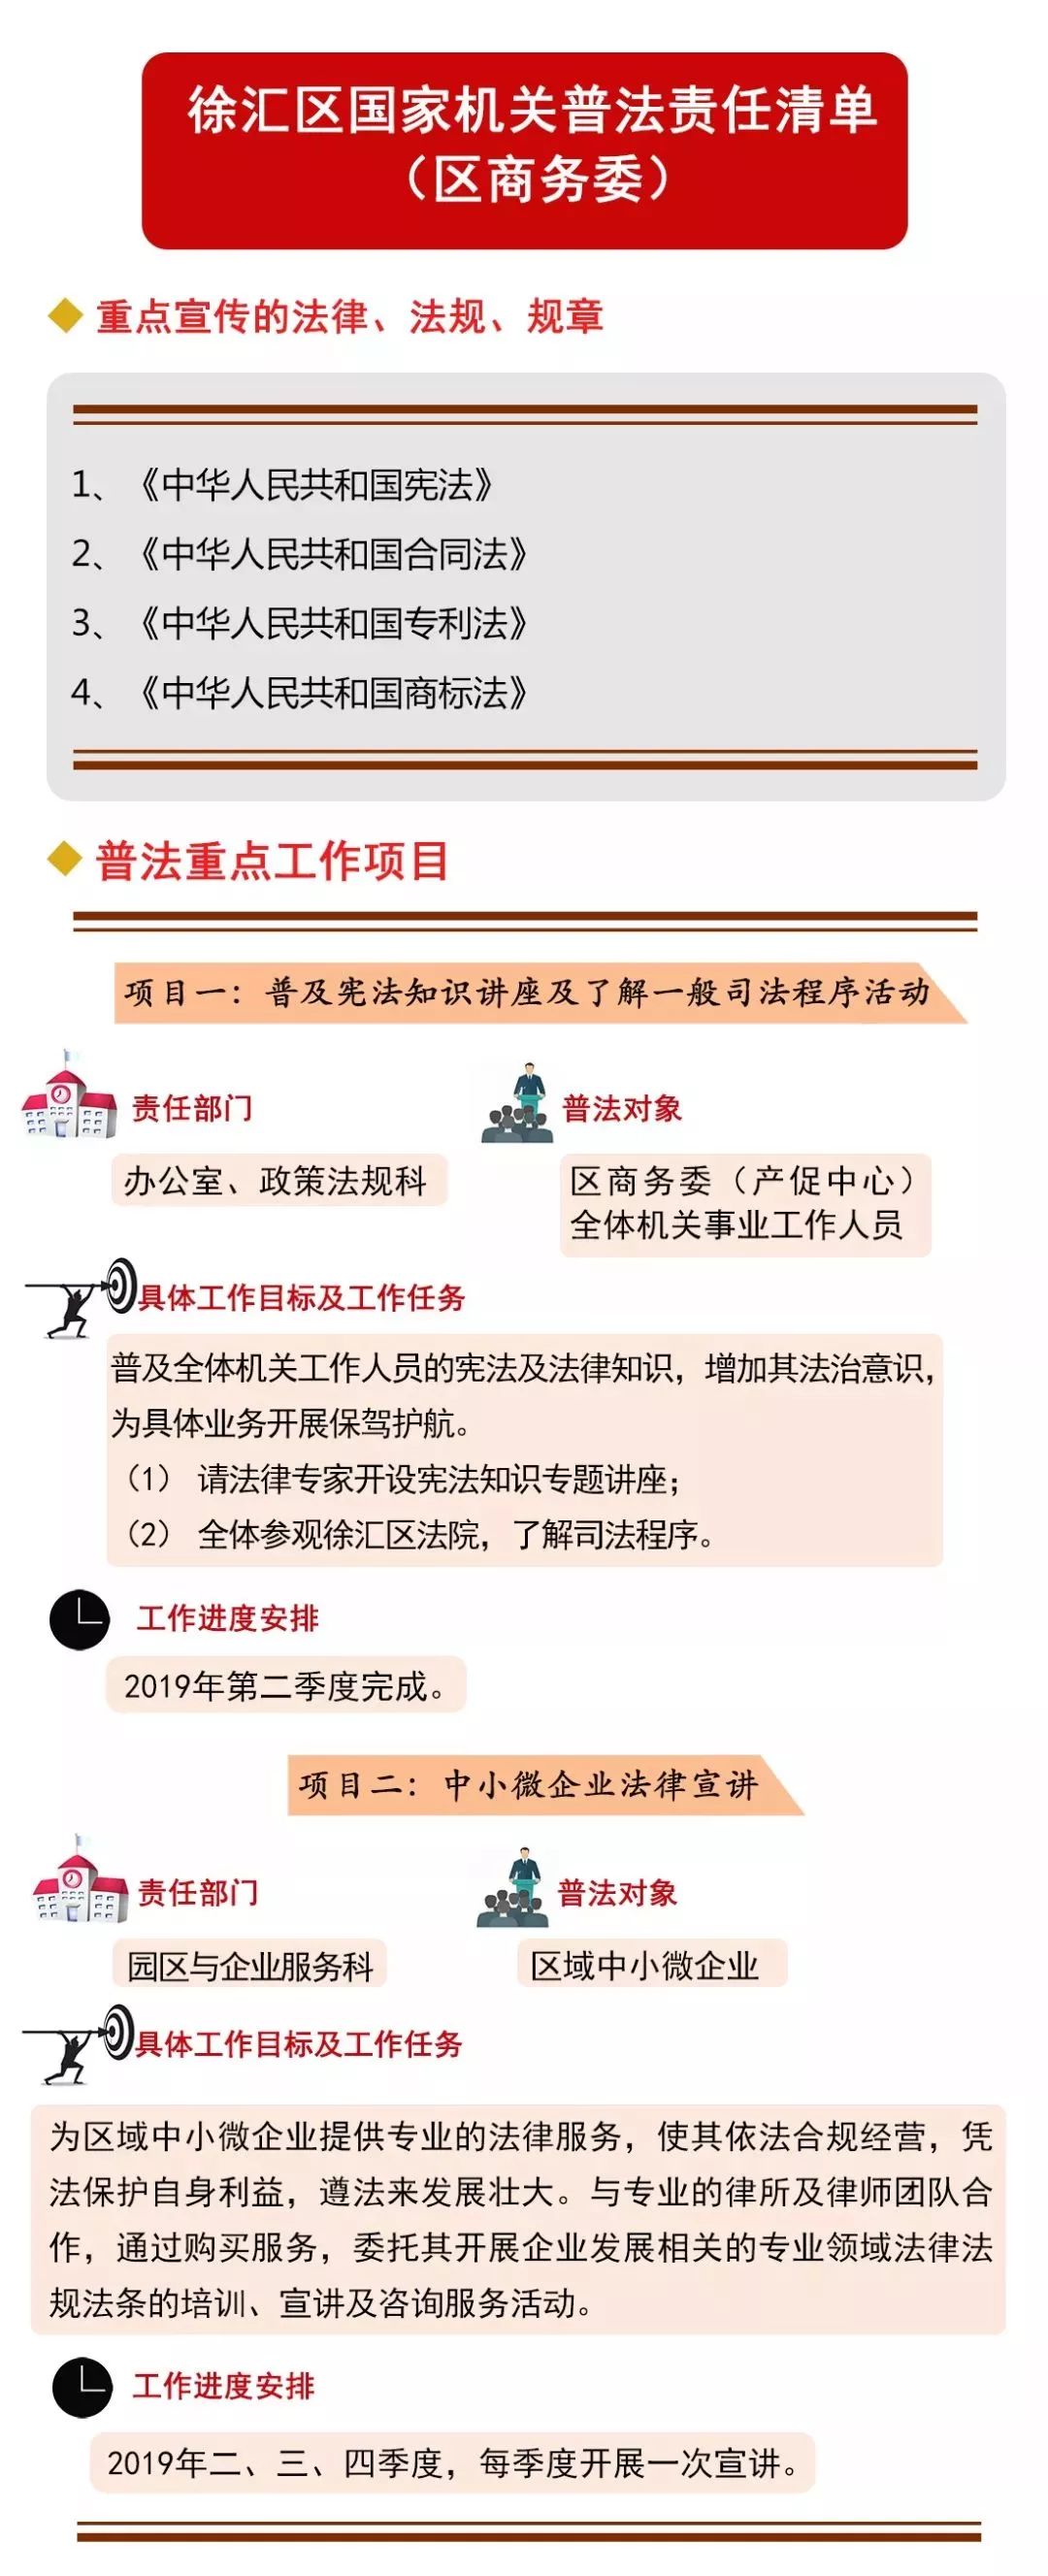 2019年徐汇区国家机关普法责任清单公布(第一